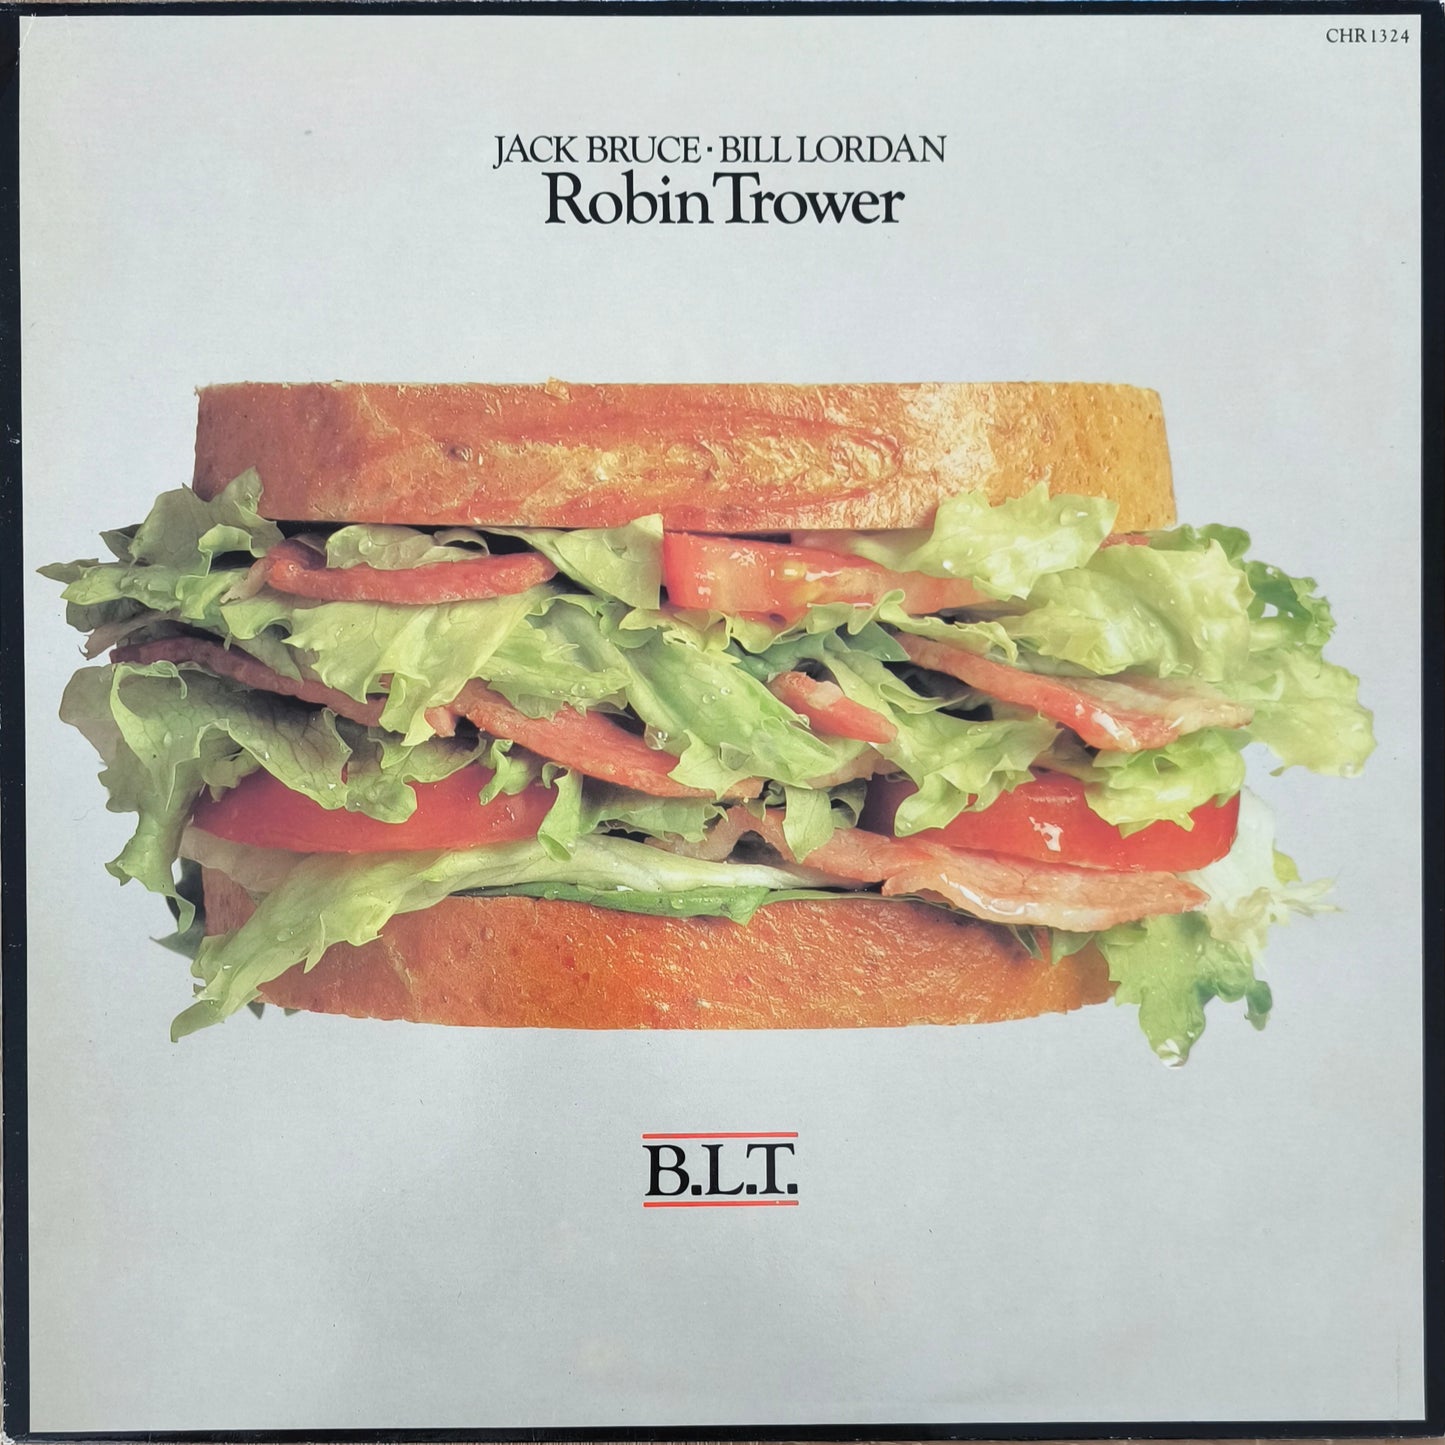 ROBIN TROWER / BILL LORDAN / JACK BRUCE - B.L.T.